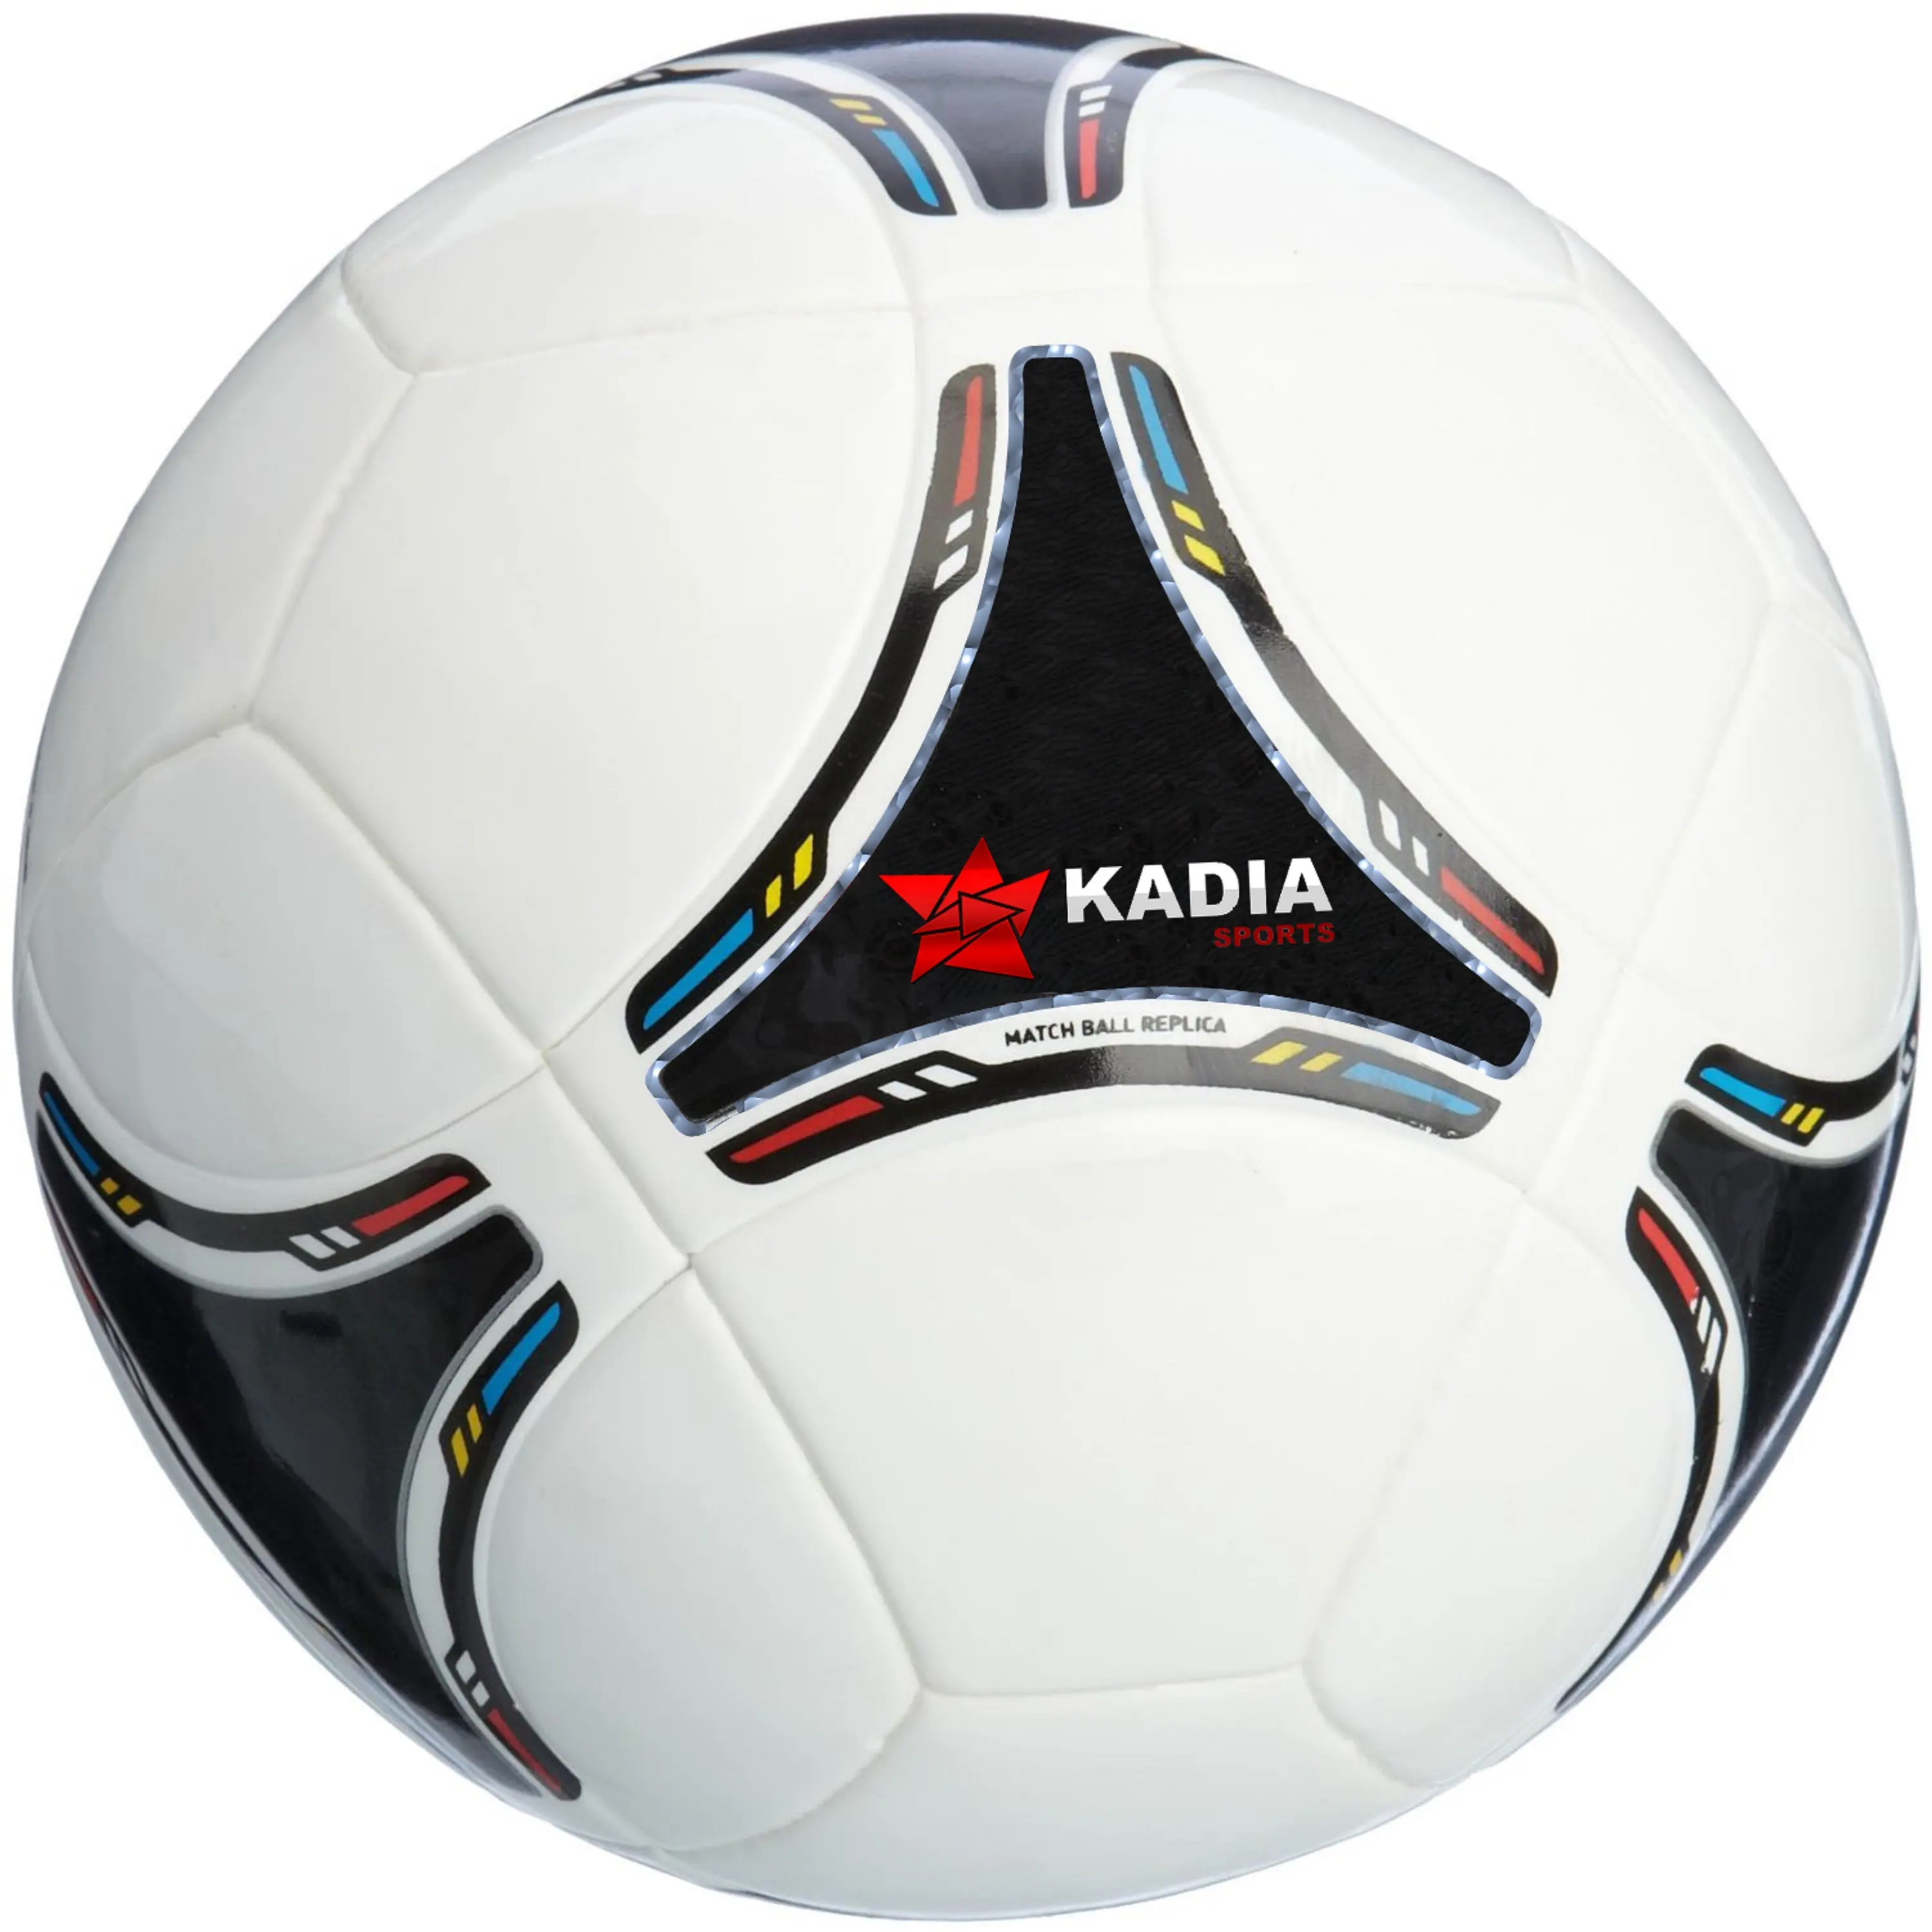 ฟุตบอลขนาด4ดาว5ลูกสำหรับผู้ใหญ่ผู้ใหญ่มังกรมาตรฐานสำหรับการฝึกซ้อมลูกฟุตบอลกลางแจ้งในร่มของขวัญฟรี